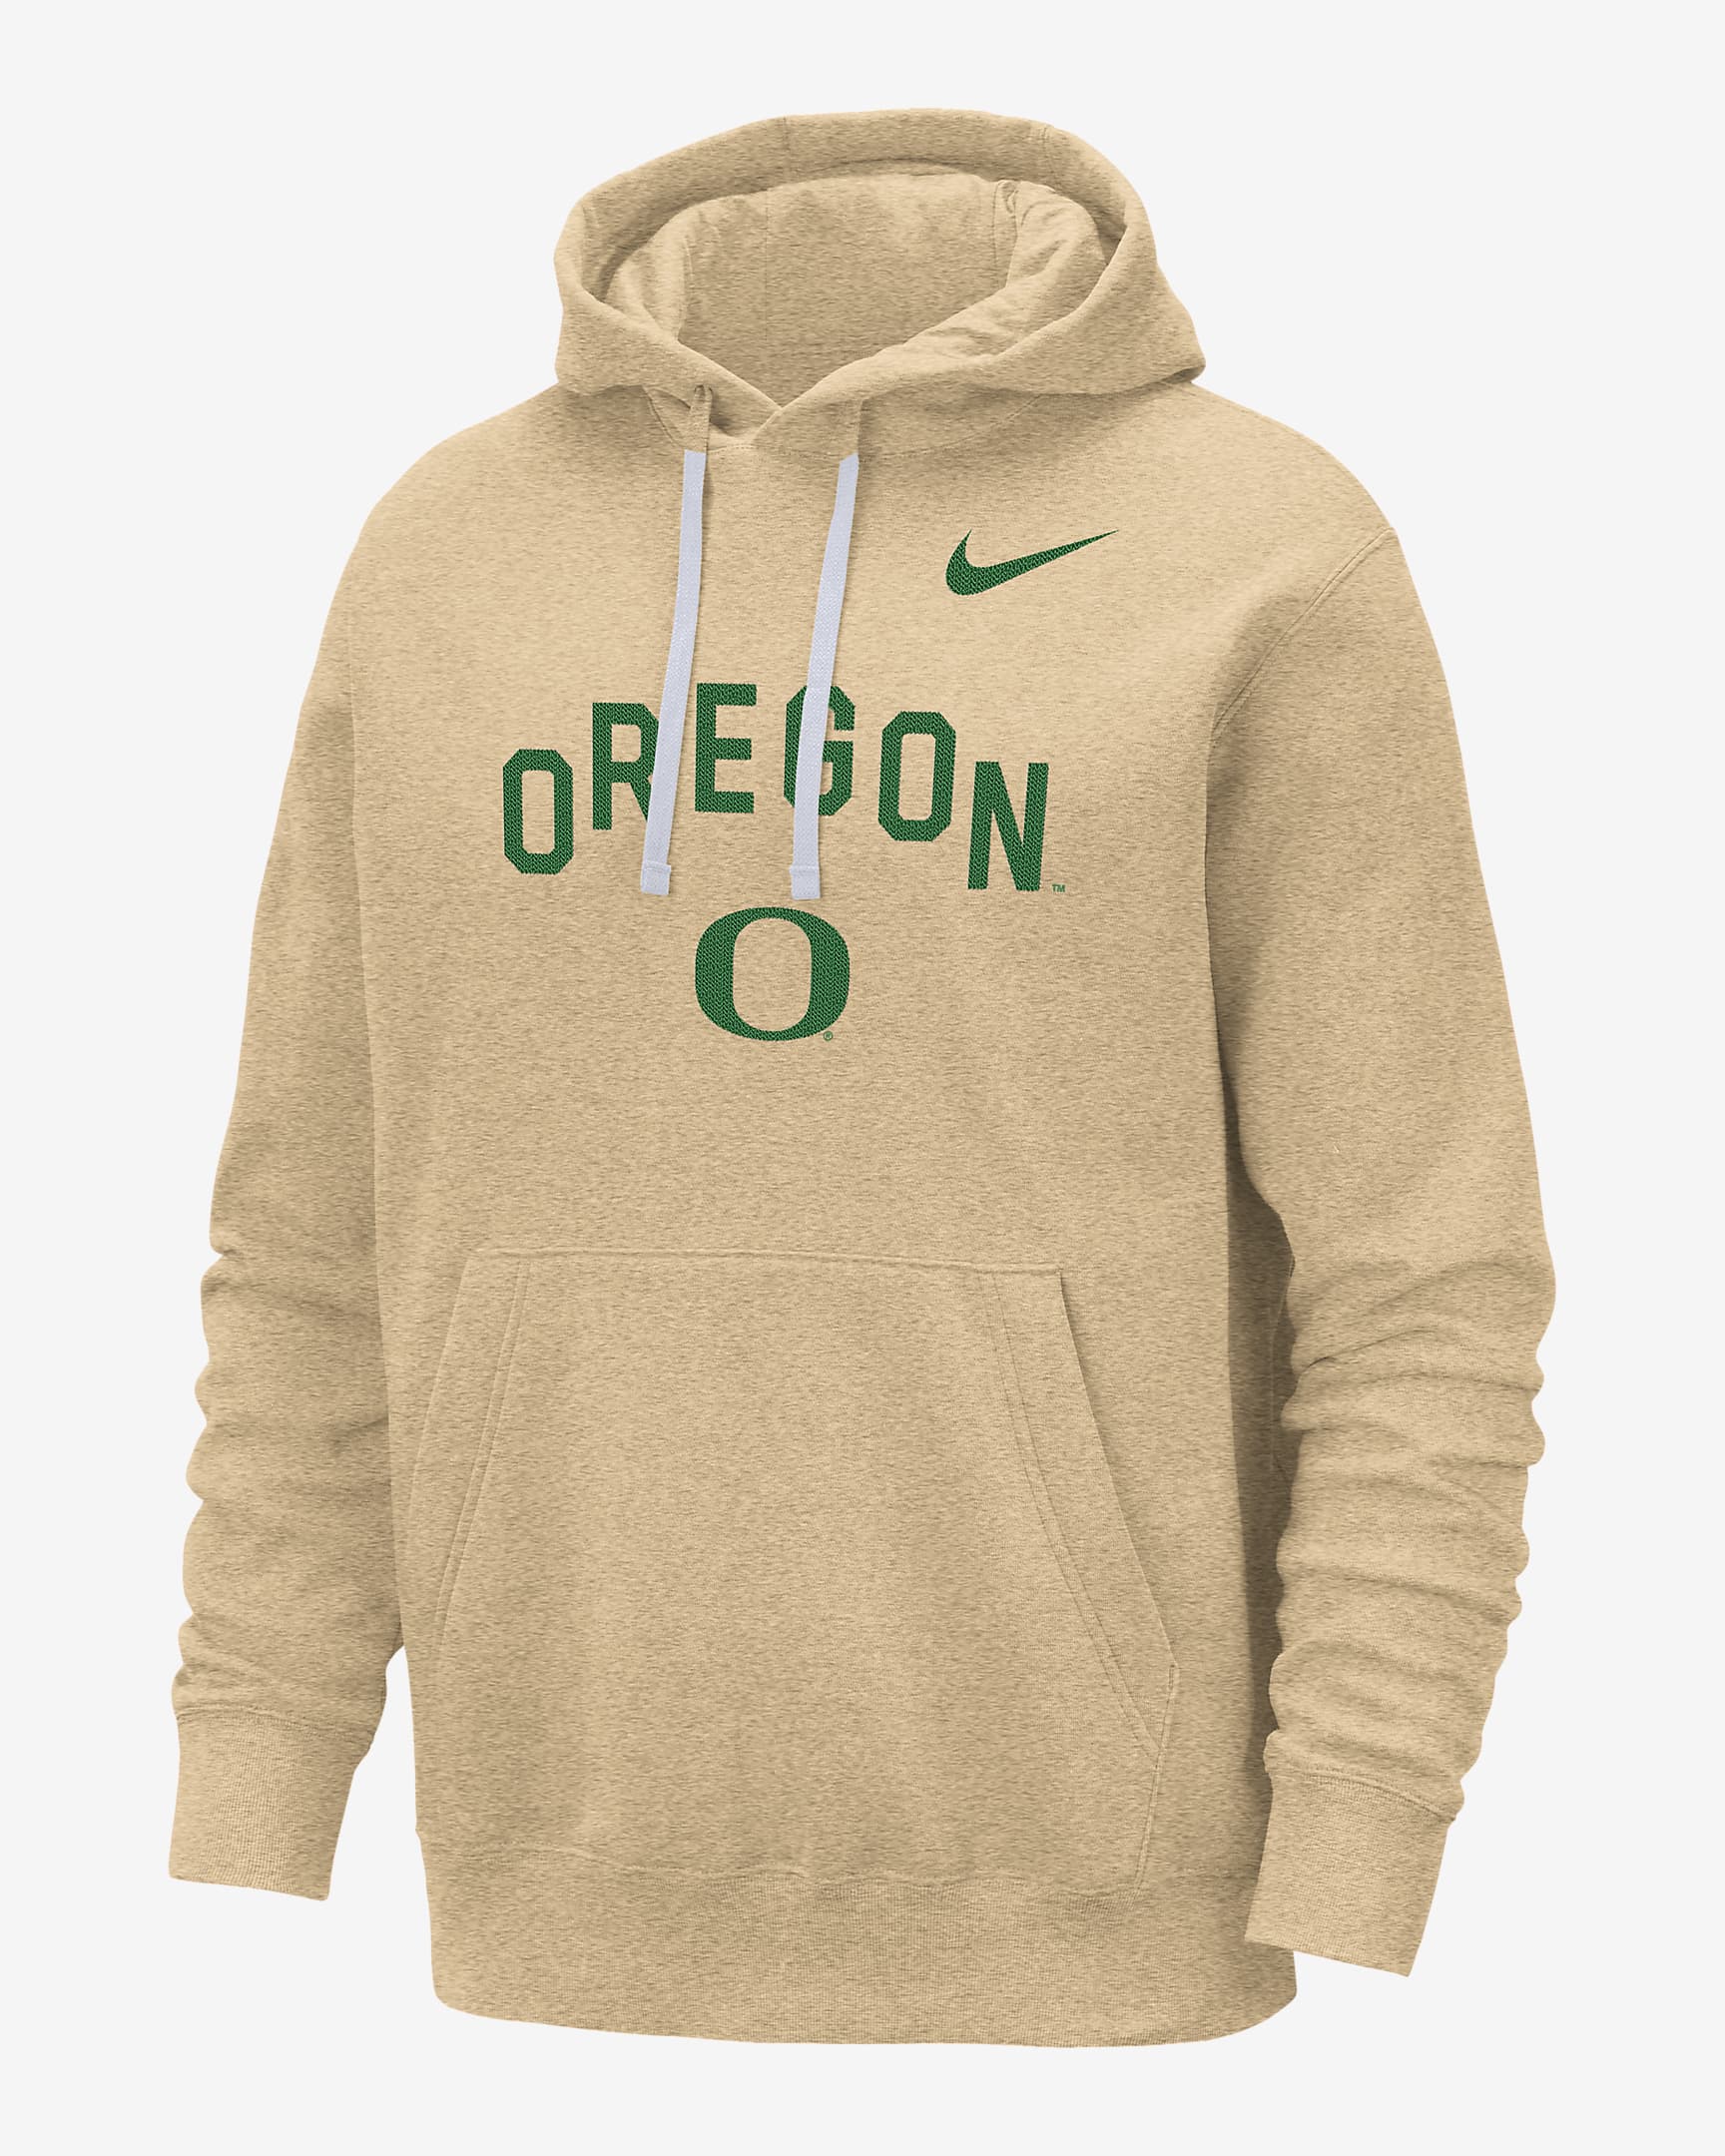 Sudadera con gorro sin cierre universitaria Nike para hombre Oregon ...